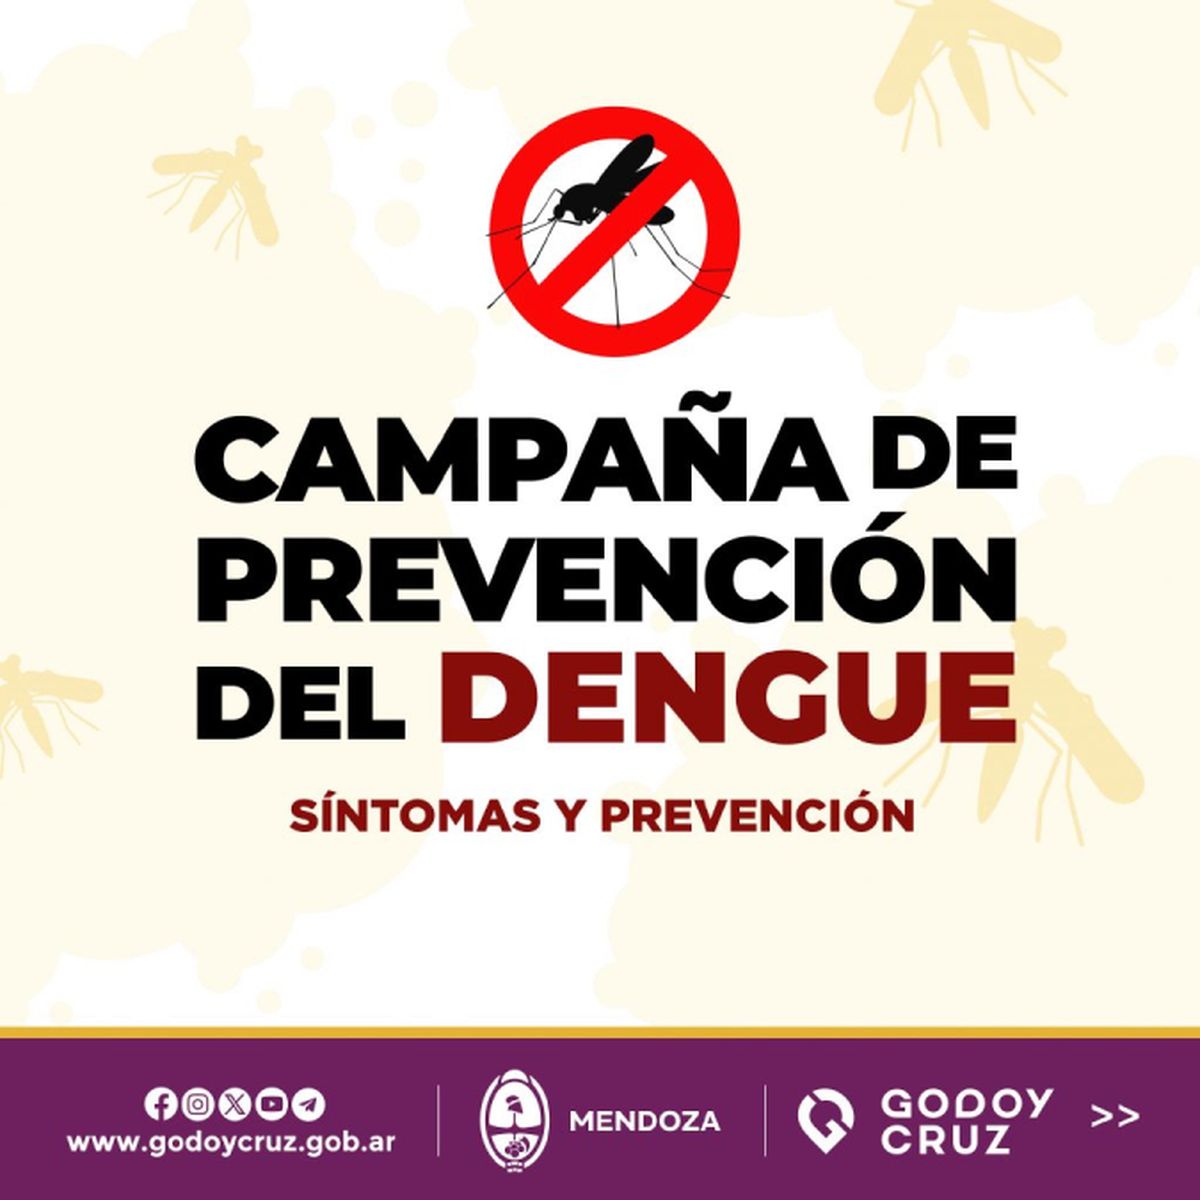 La Municipalidad de Godoy Cruz visita los barrios y entrega folletos informativos de prevención y alerta contra el Dengue.